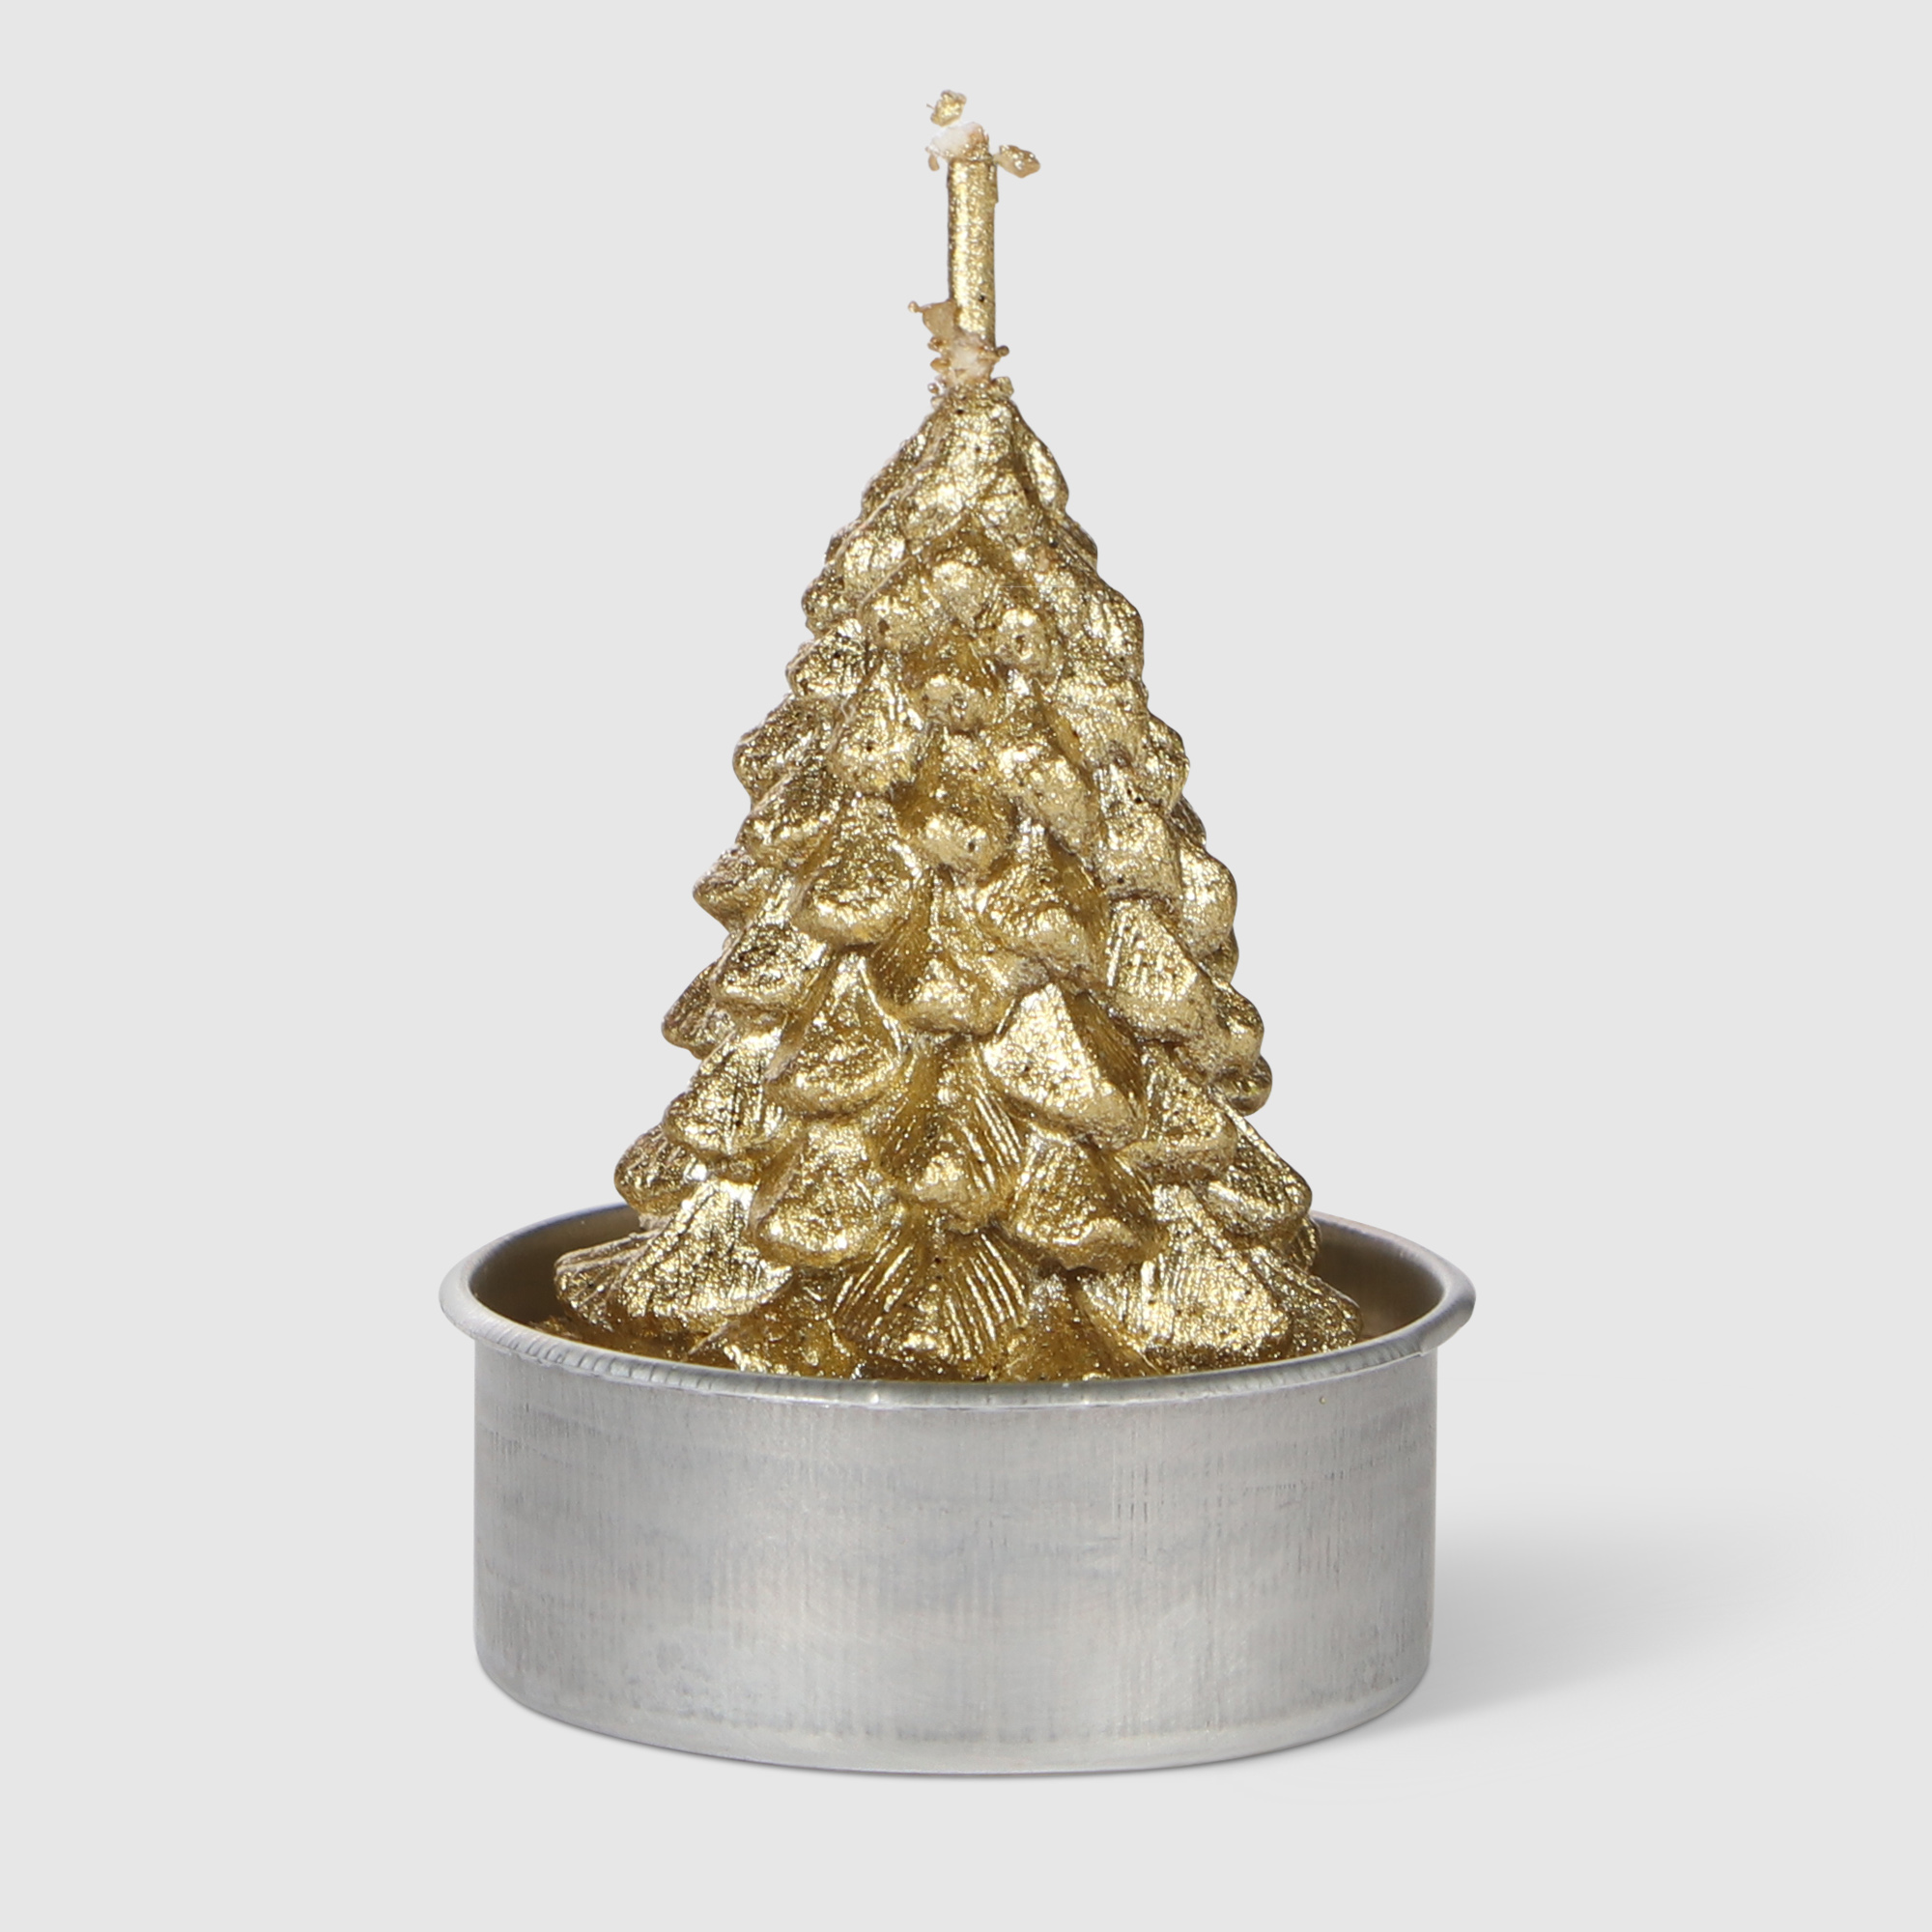 Набор свечей Mercury NY ёлка золото 6 см 6 шт набор новогодних свечей ad trend ny 7 5 см 2 шт в ассортименте